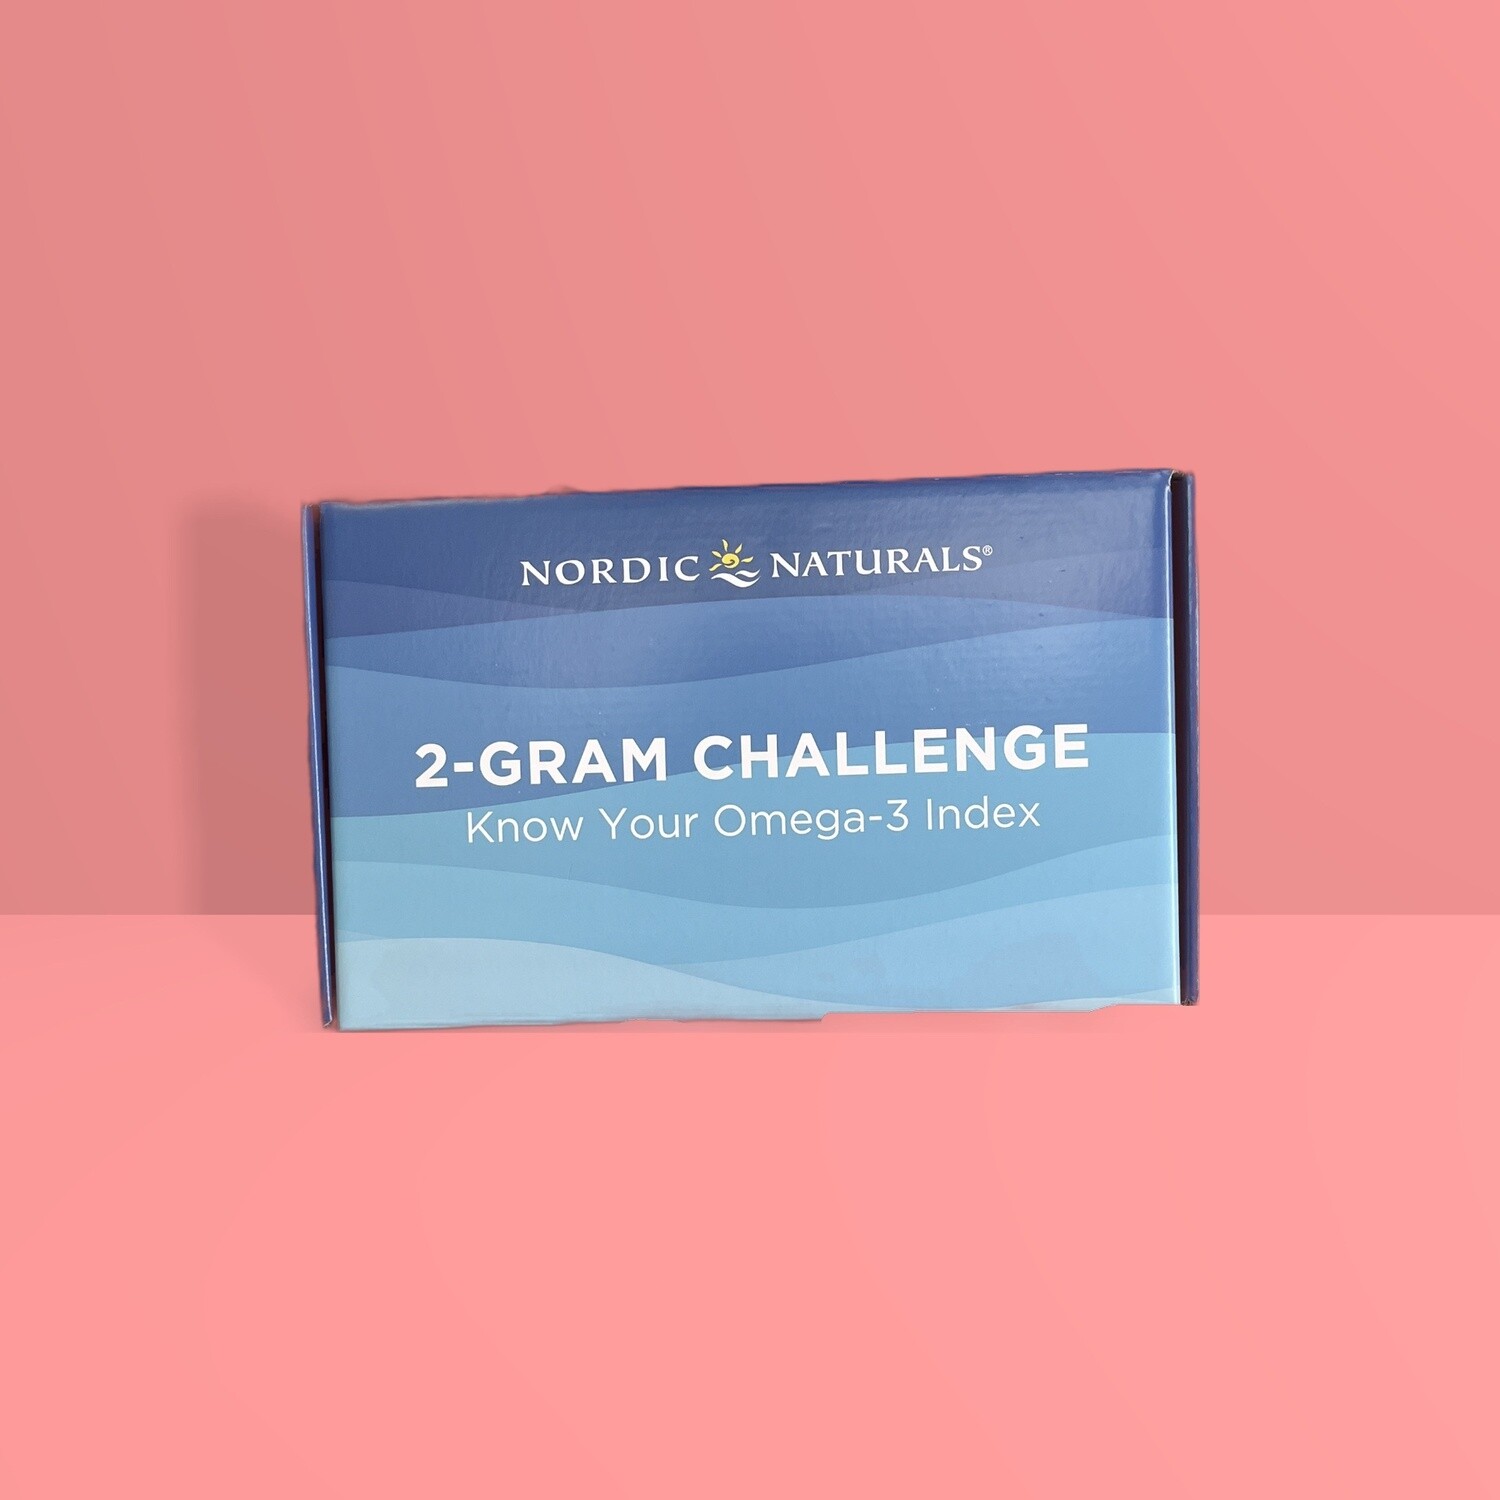 Nordic 2-Gram Challenge Omega 3 blood test